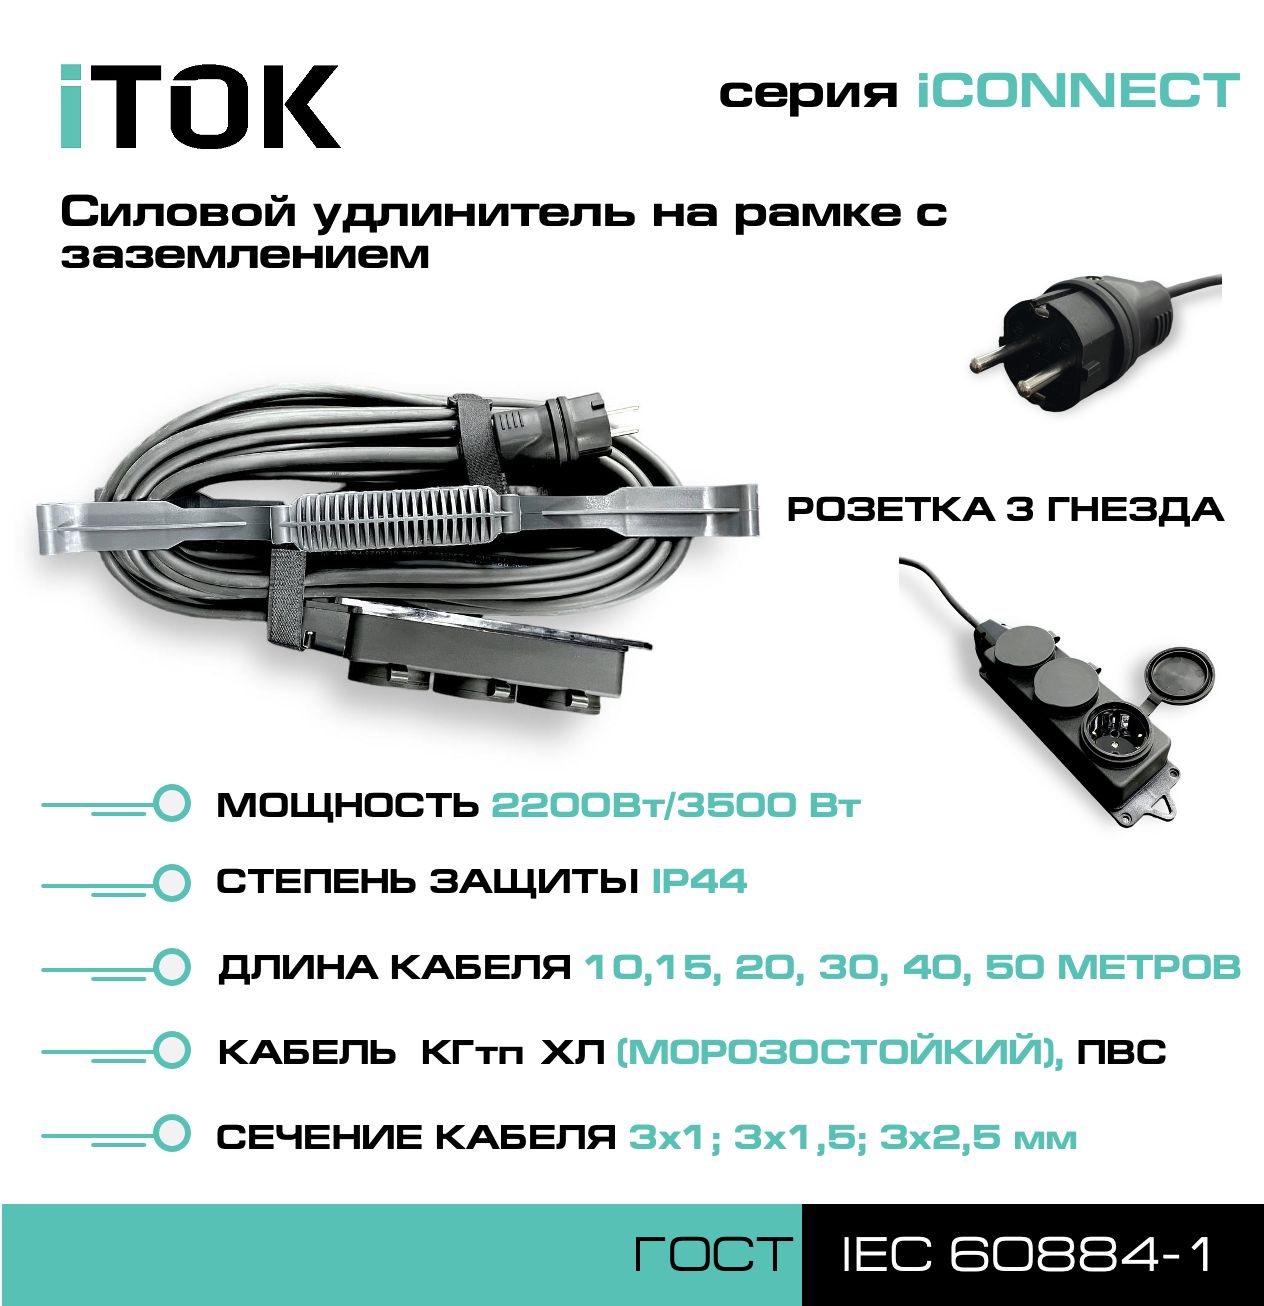 Удлинитель на рамке с заземлением серии iTOK iCONNECT ПВС 3х2,5 мм 3 гнезда IP44 15 м зарядные гнезда usb в виде клавиши marina 3 1 а more 10264236